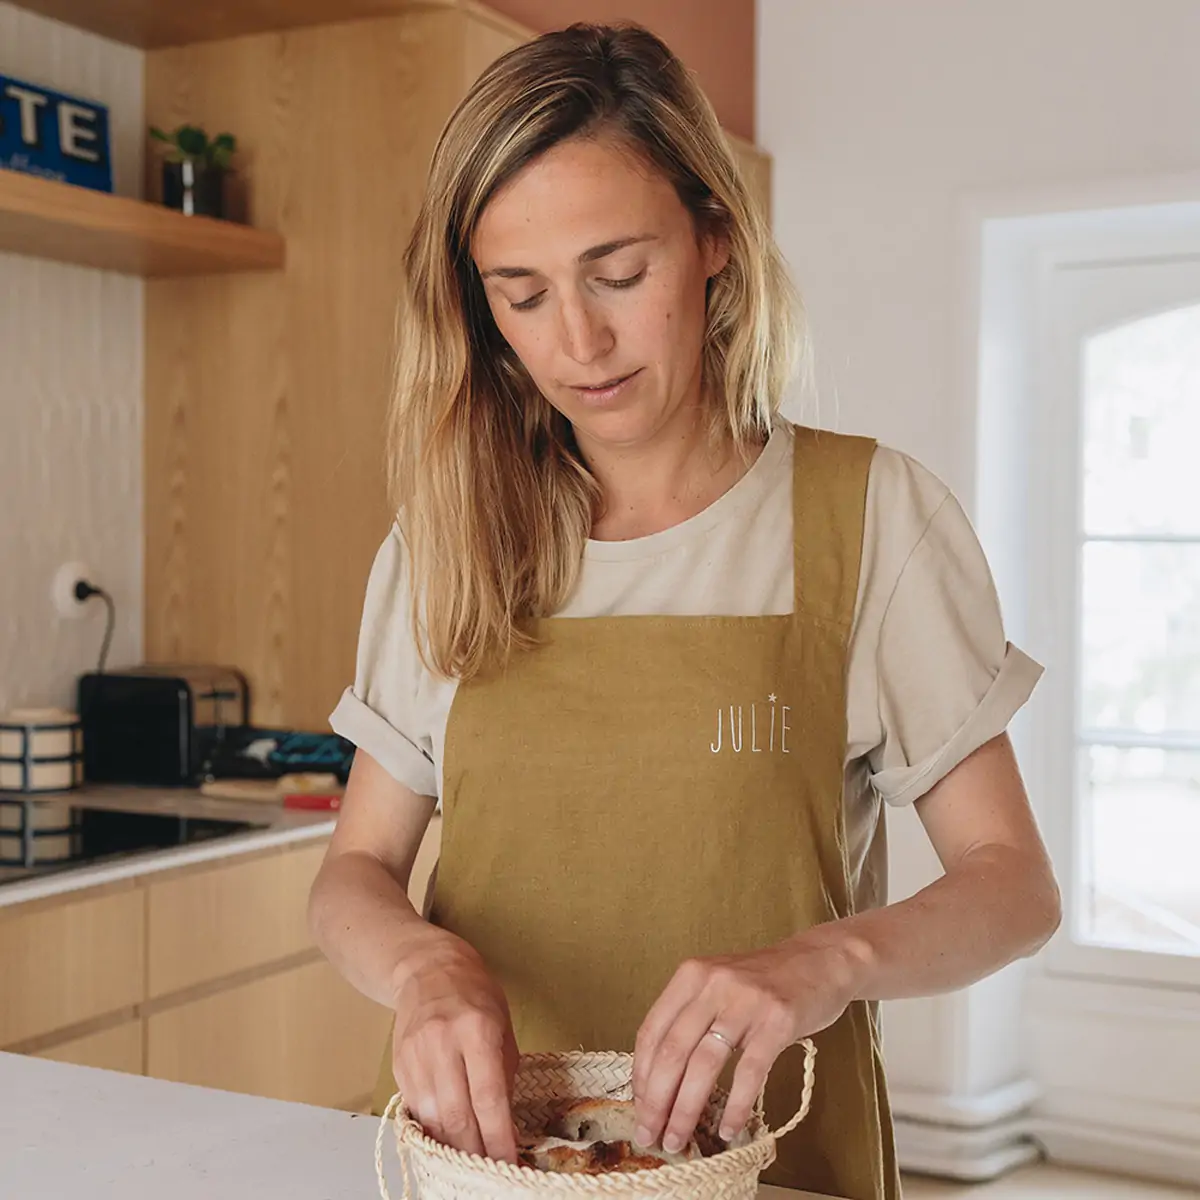 Tablier de cuisine femme personnalisé – Cool and the bag